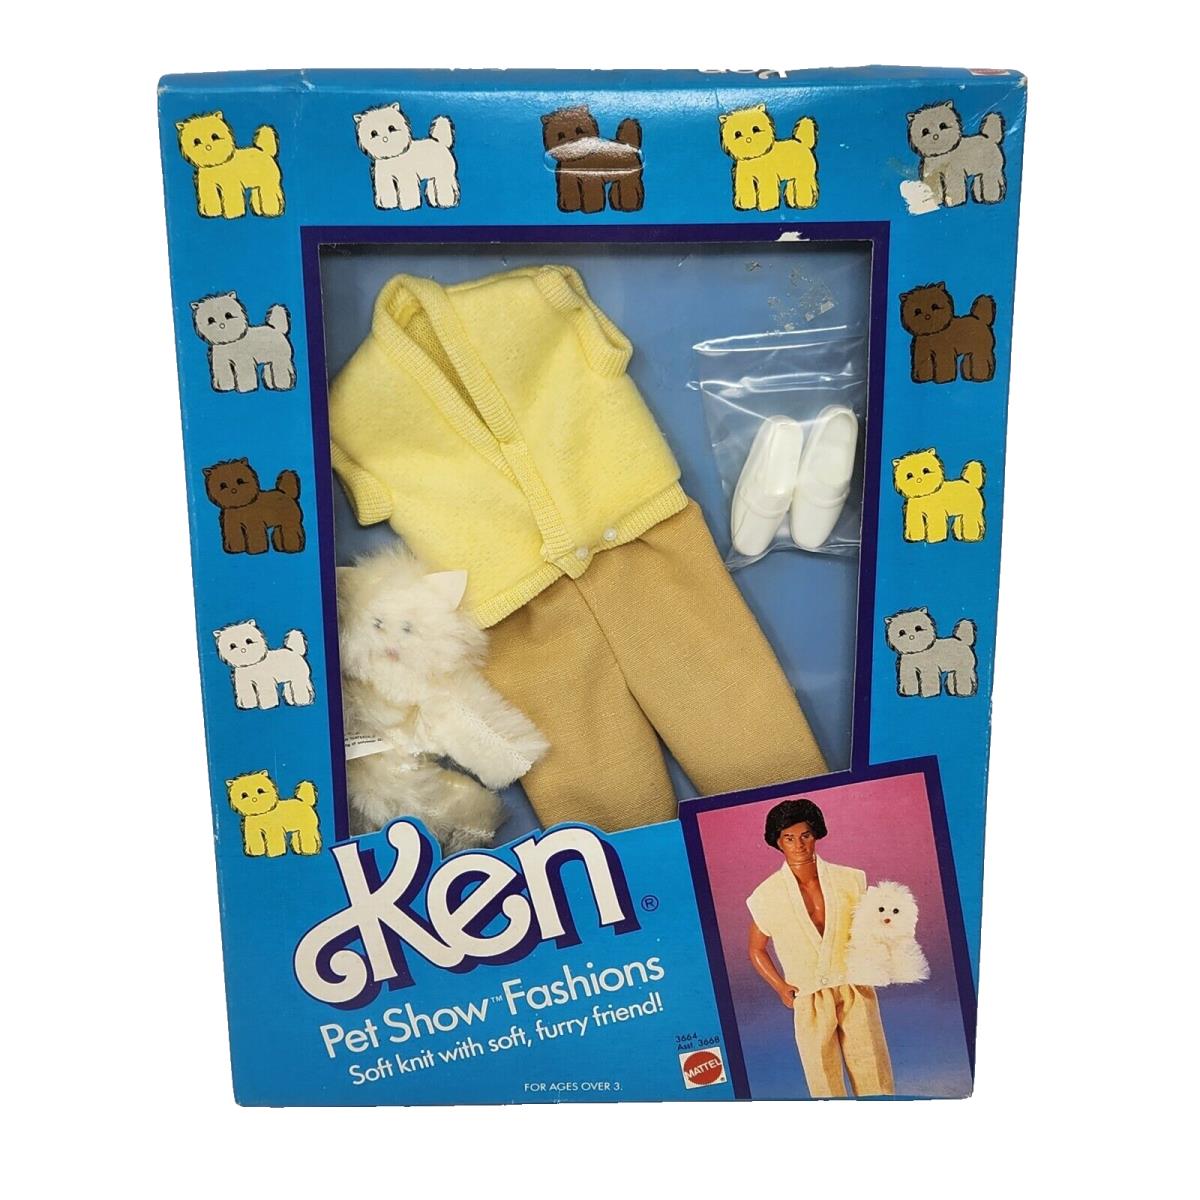 Vintage 1986 Ken Pet Show Fashions Barbie Mattel Box 3664